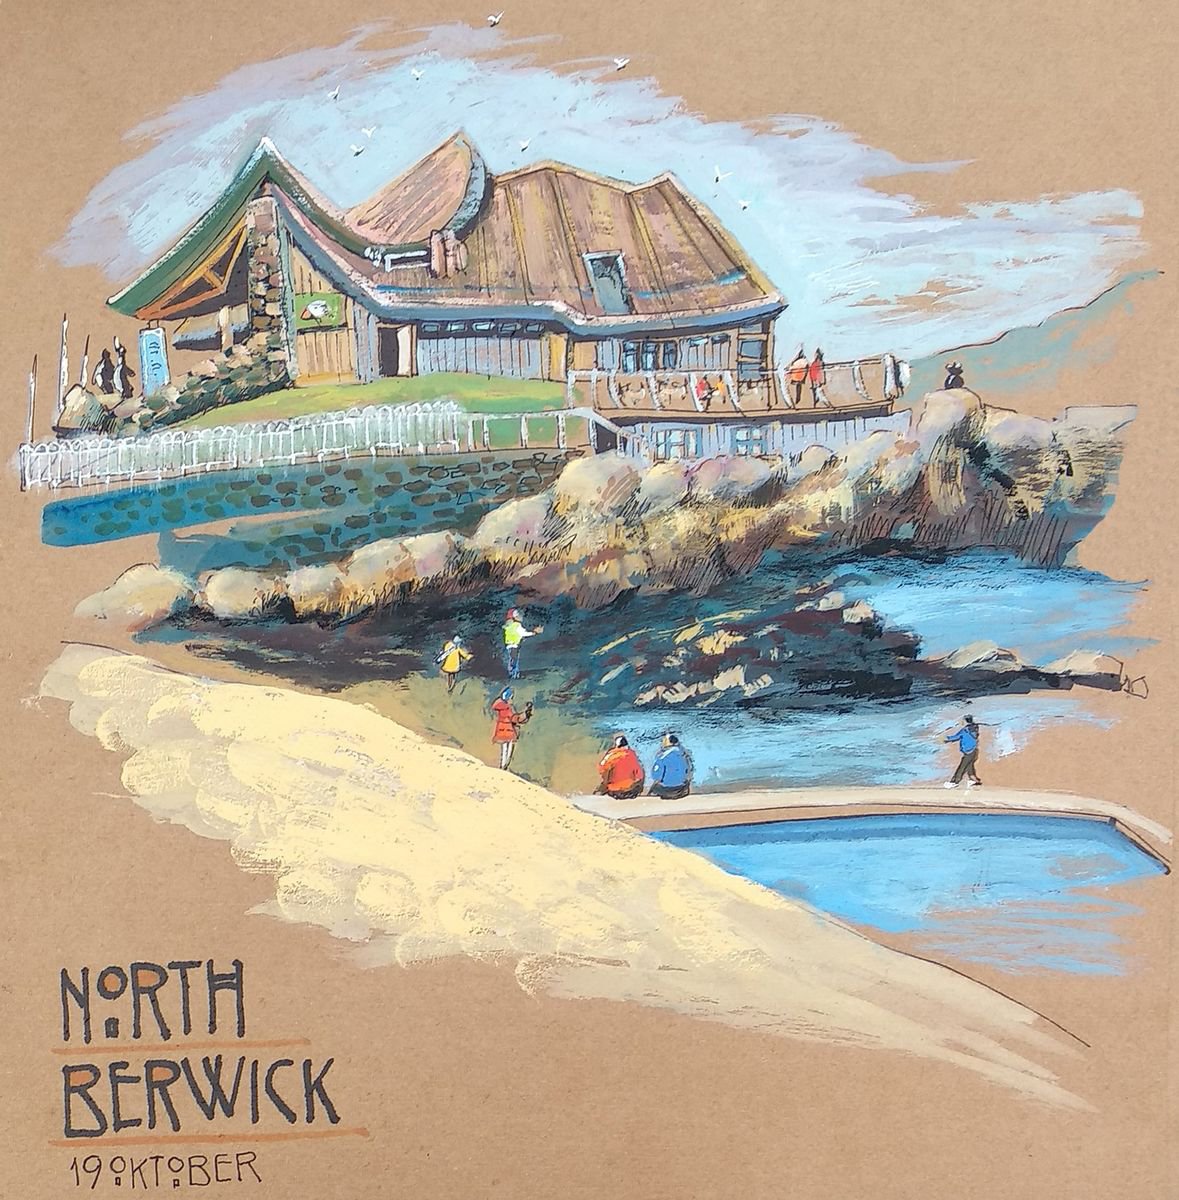 North Berwick, seabird centre. by Maiia Vysotska